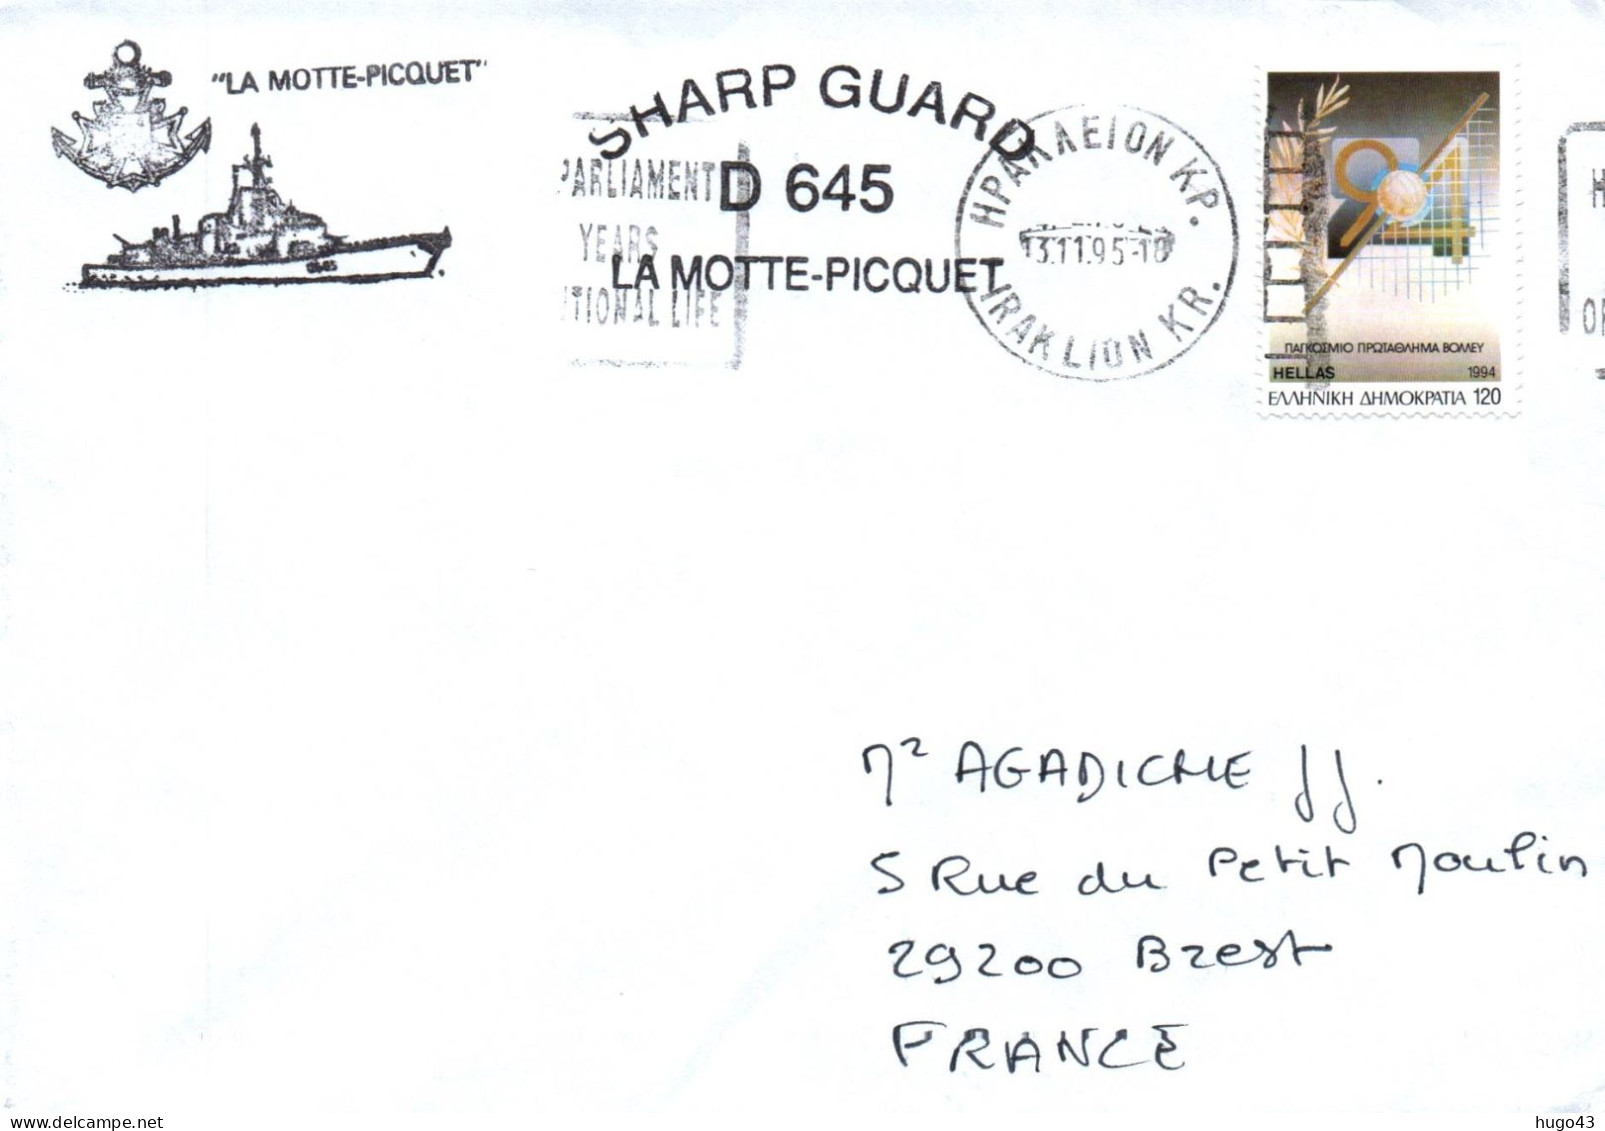 ENVELOPPE AVEC CACHET FREGATE FASM LA MOTTE PICQUET - SHARP GUARD D645 - ESCALE EN GRECE LE 13/11/1995 - Scheepspost